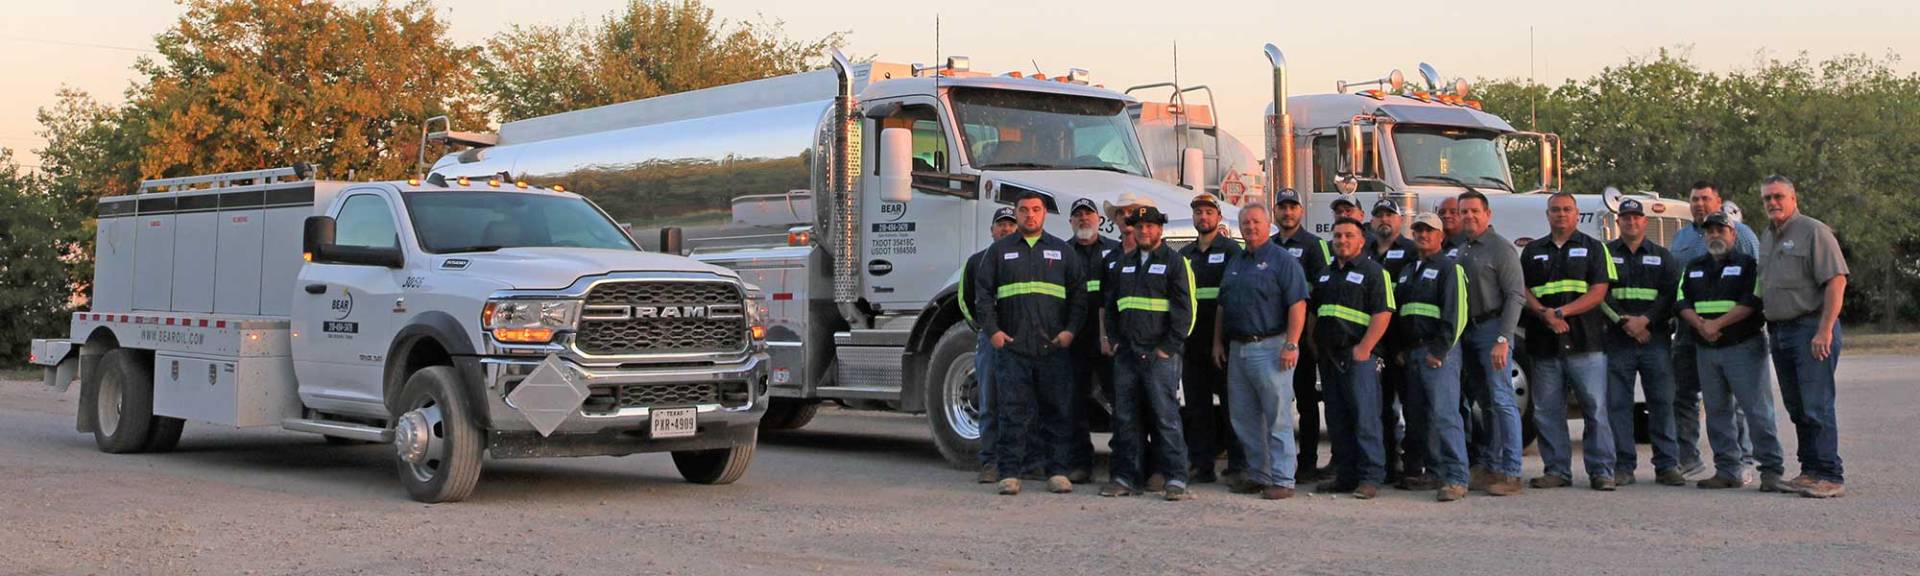 Bear Oil employees in front of trucks